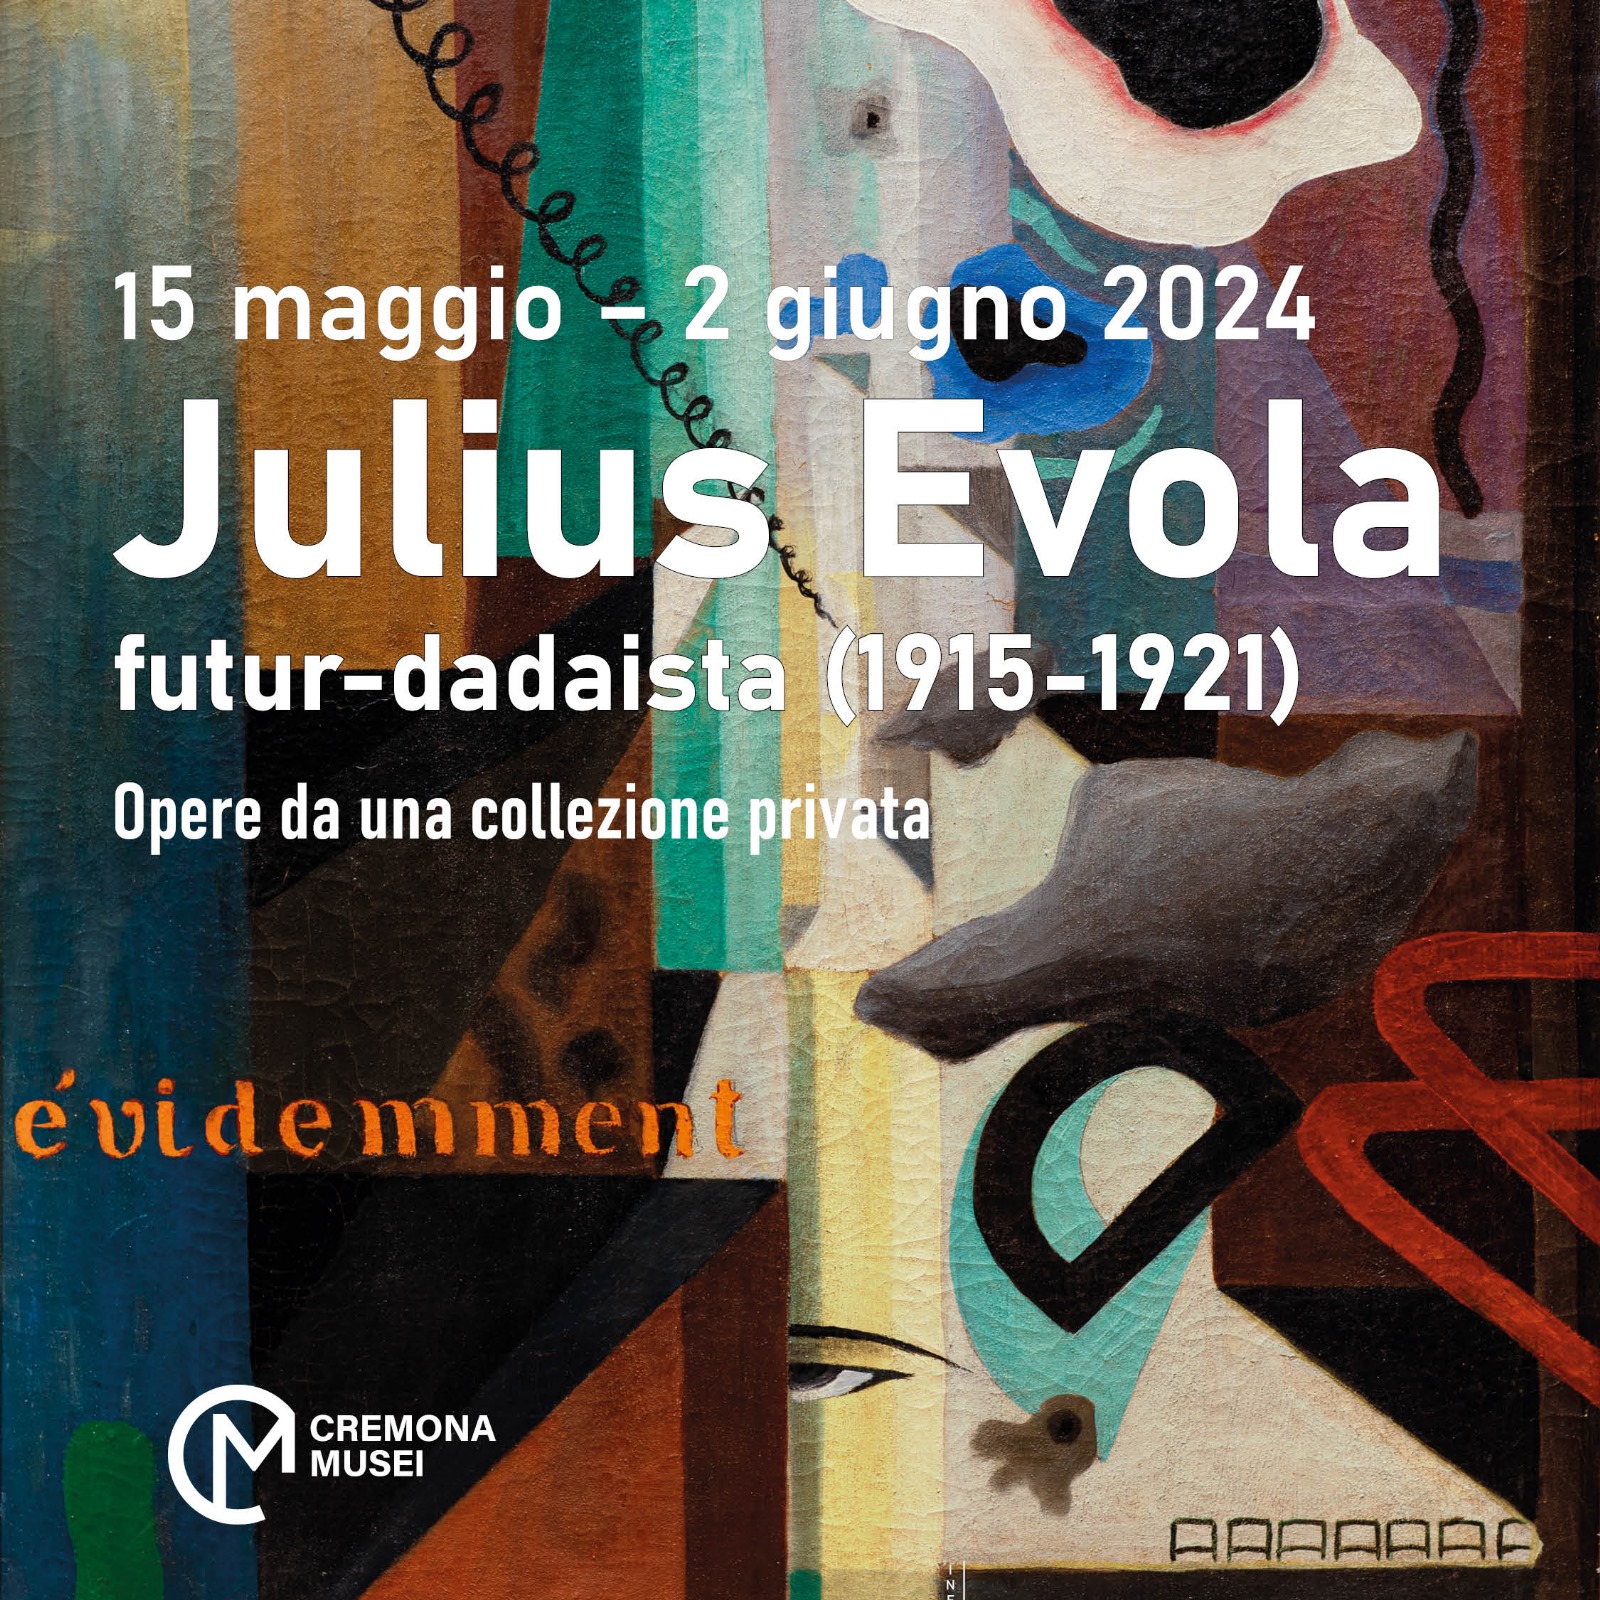 Le opere di Evola in mostra a Cremona